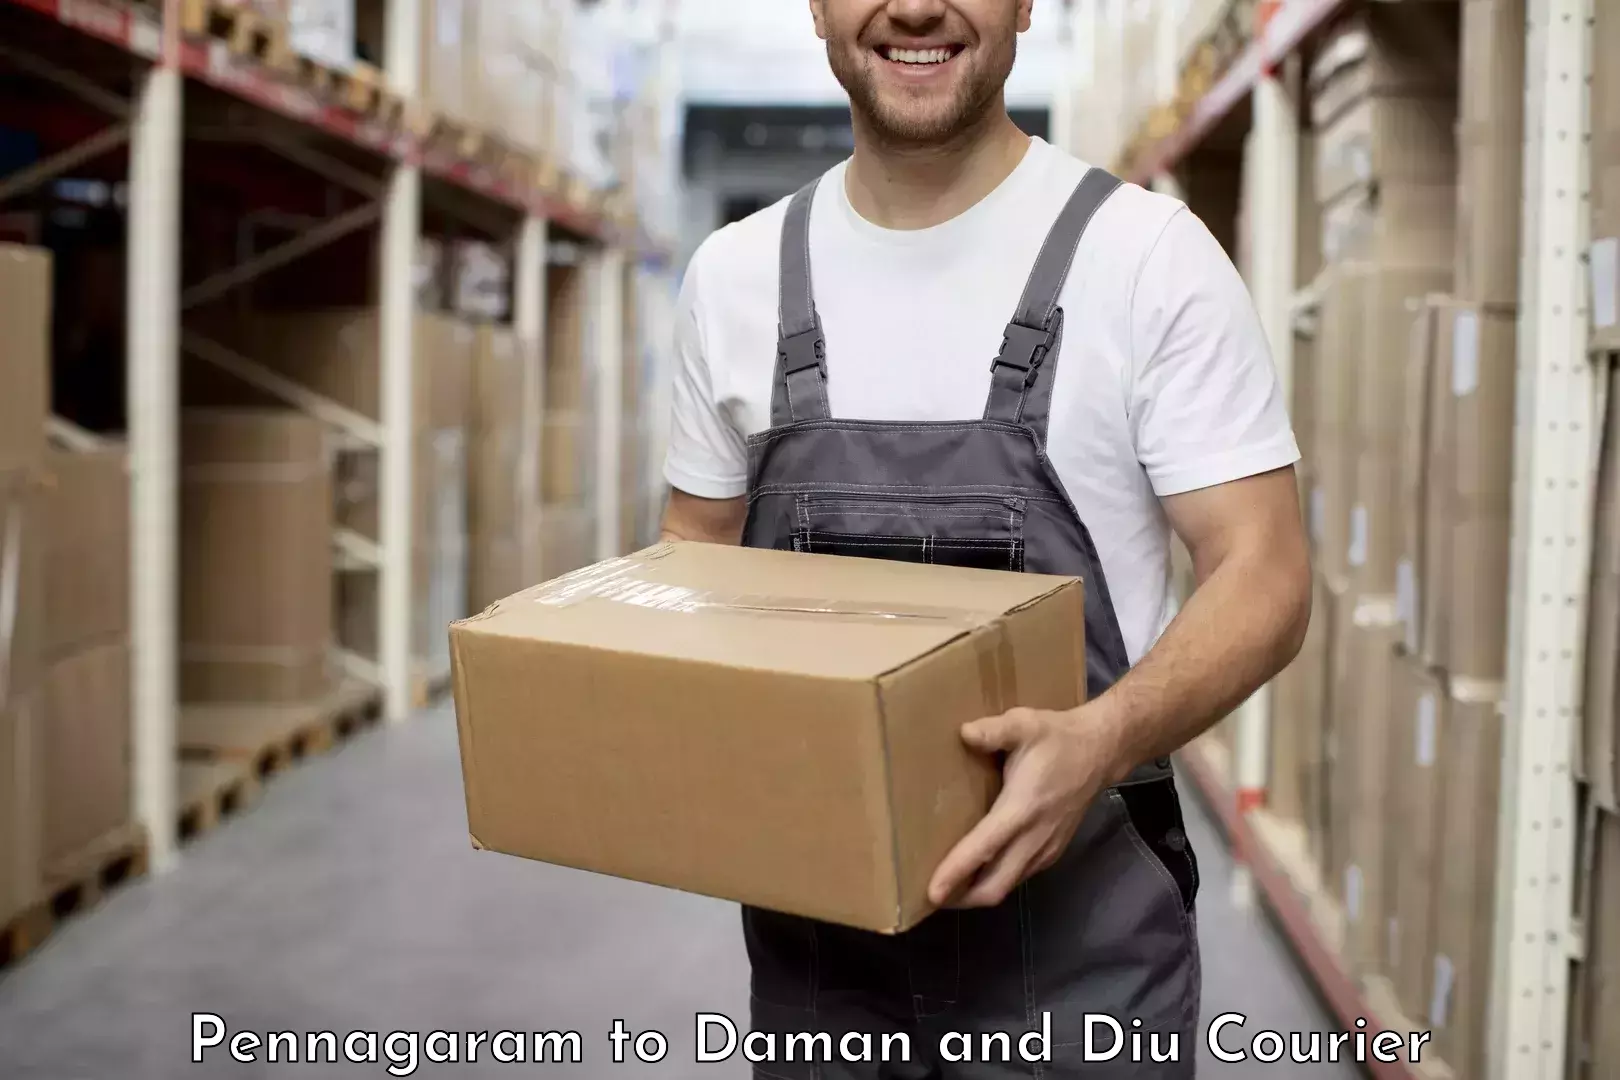 24-hour courier service Pennagaram to Diu